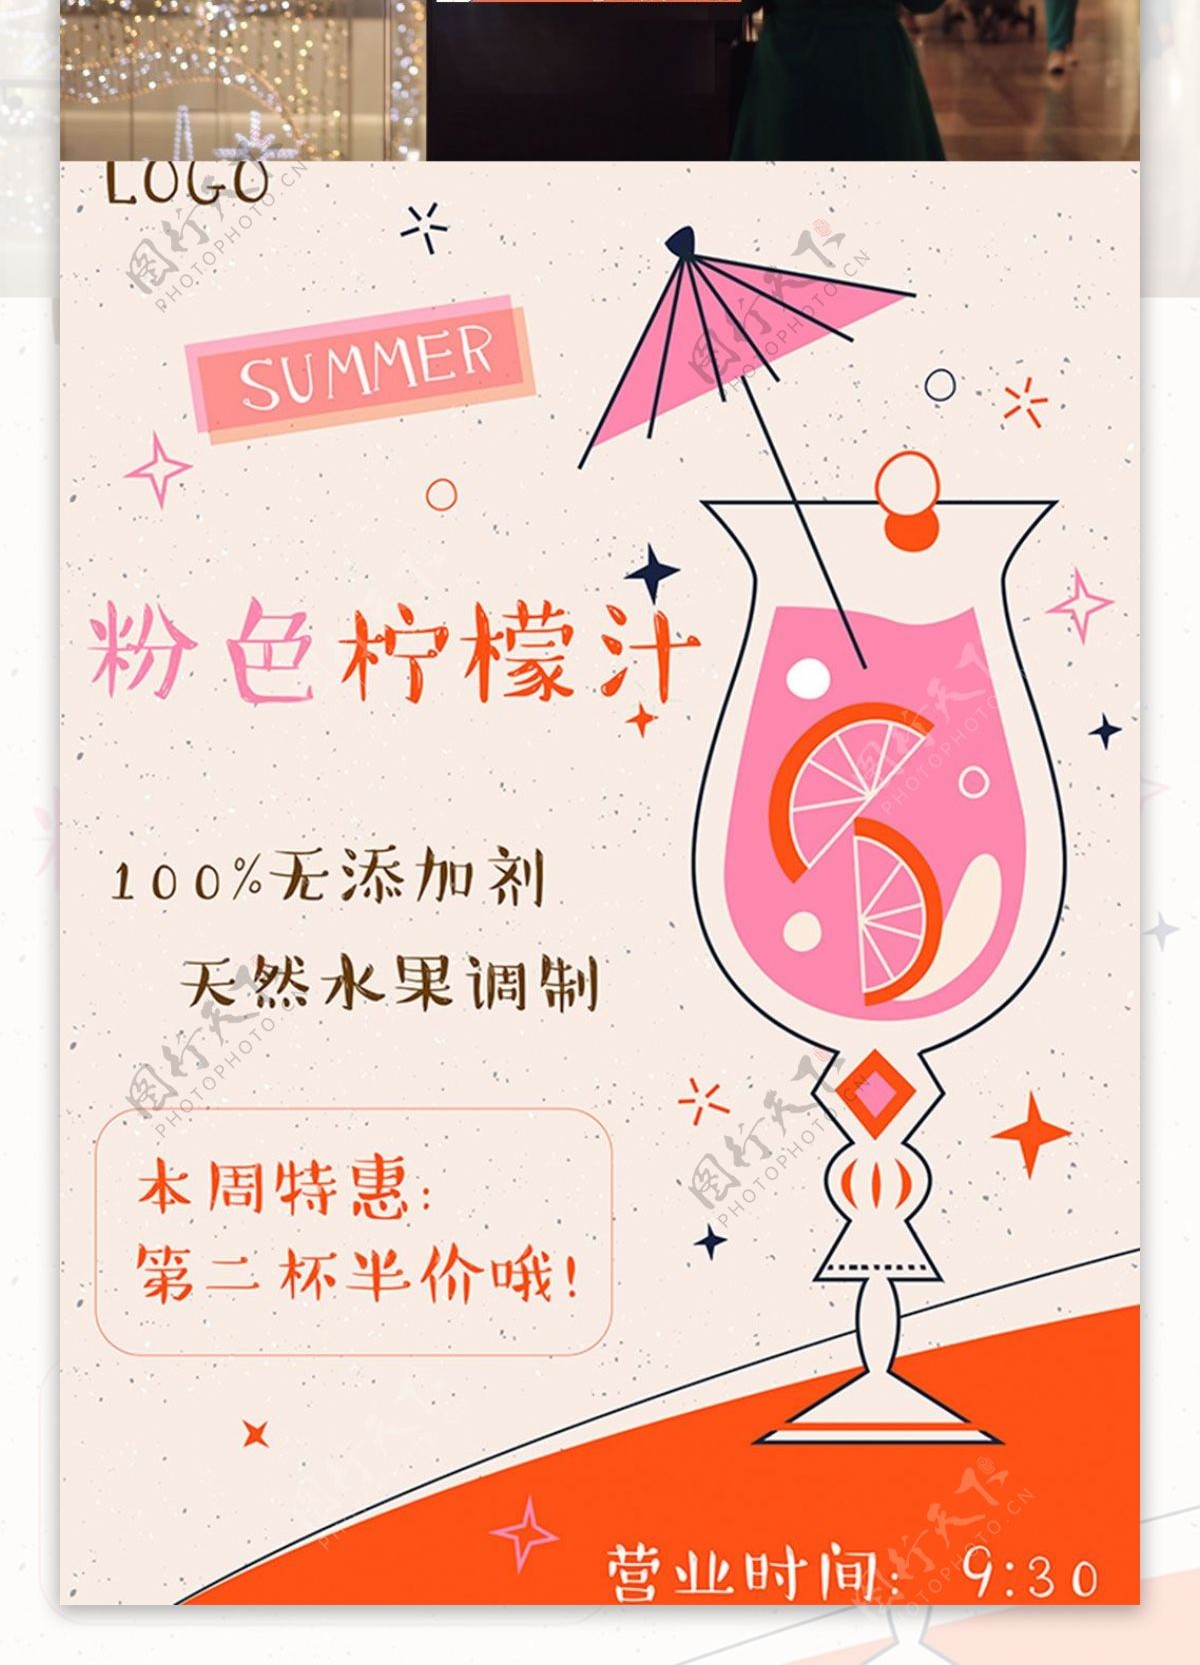 樱桃柠檬汁酸酸爽夏季饮品饮料海报PSD